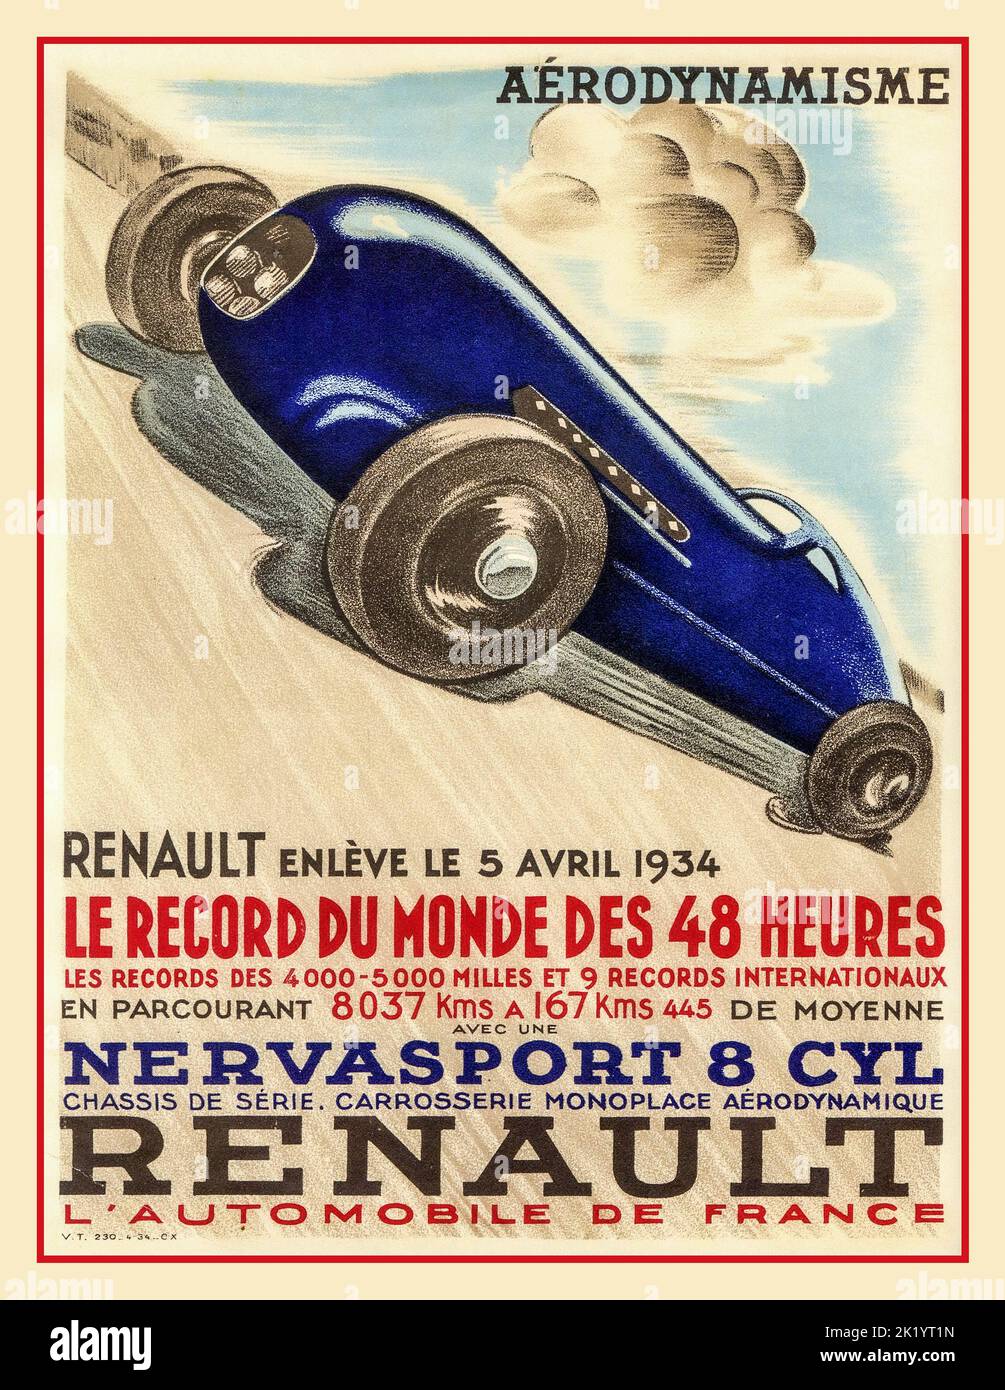 1934 Renault Vintage Motor Racing Sport affiche le Record de monde des 48 heures Banque D'Images